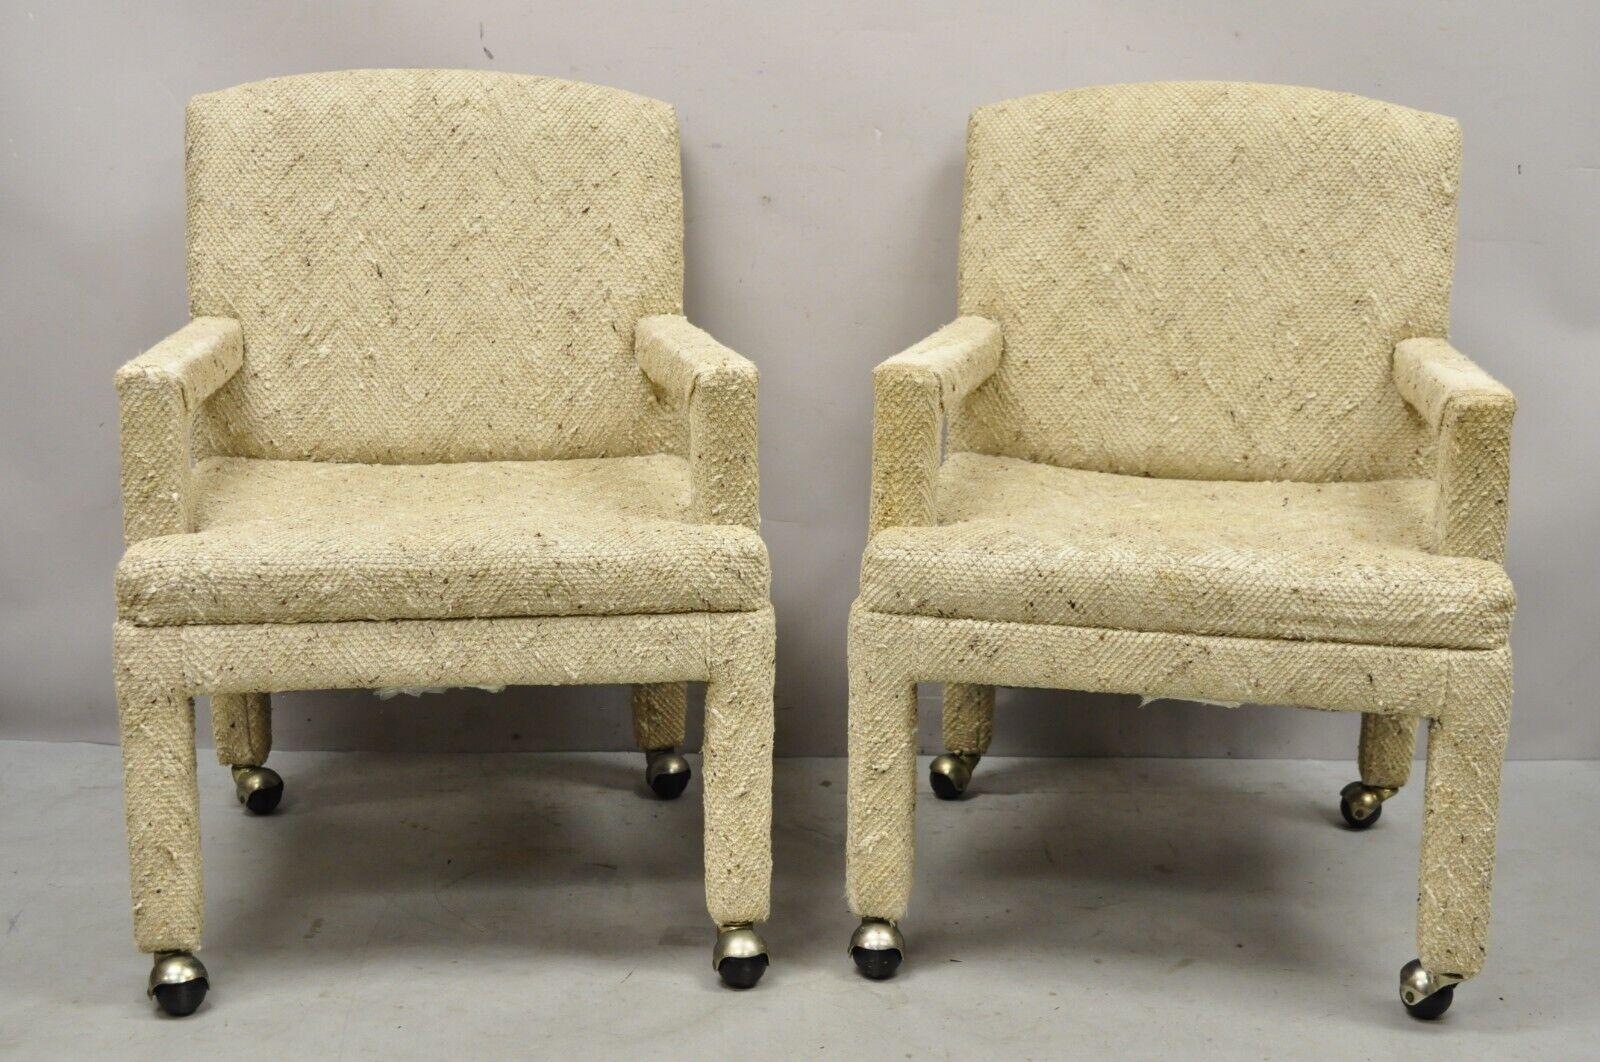 Paire de fauteuils club lounge Vintage Bassett Furniture entièrement rembourrés de style Parsons. Ce meuble est équipé de roulettes, d'un tissu en laine beige, d'un label original, d'une très belle paire de meubles vintage, aux lignes modernes et